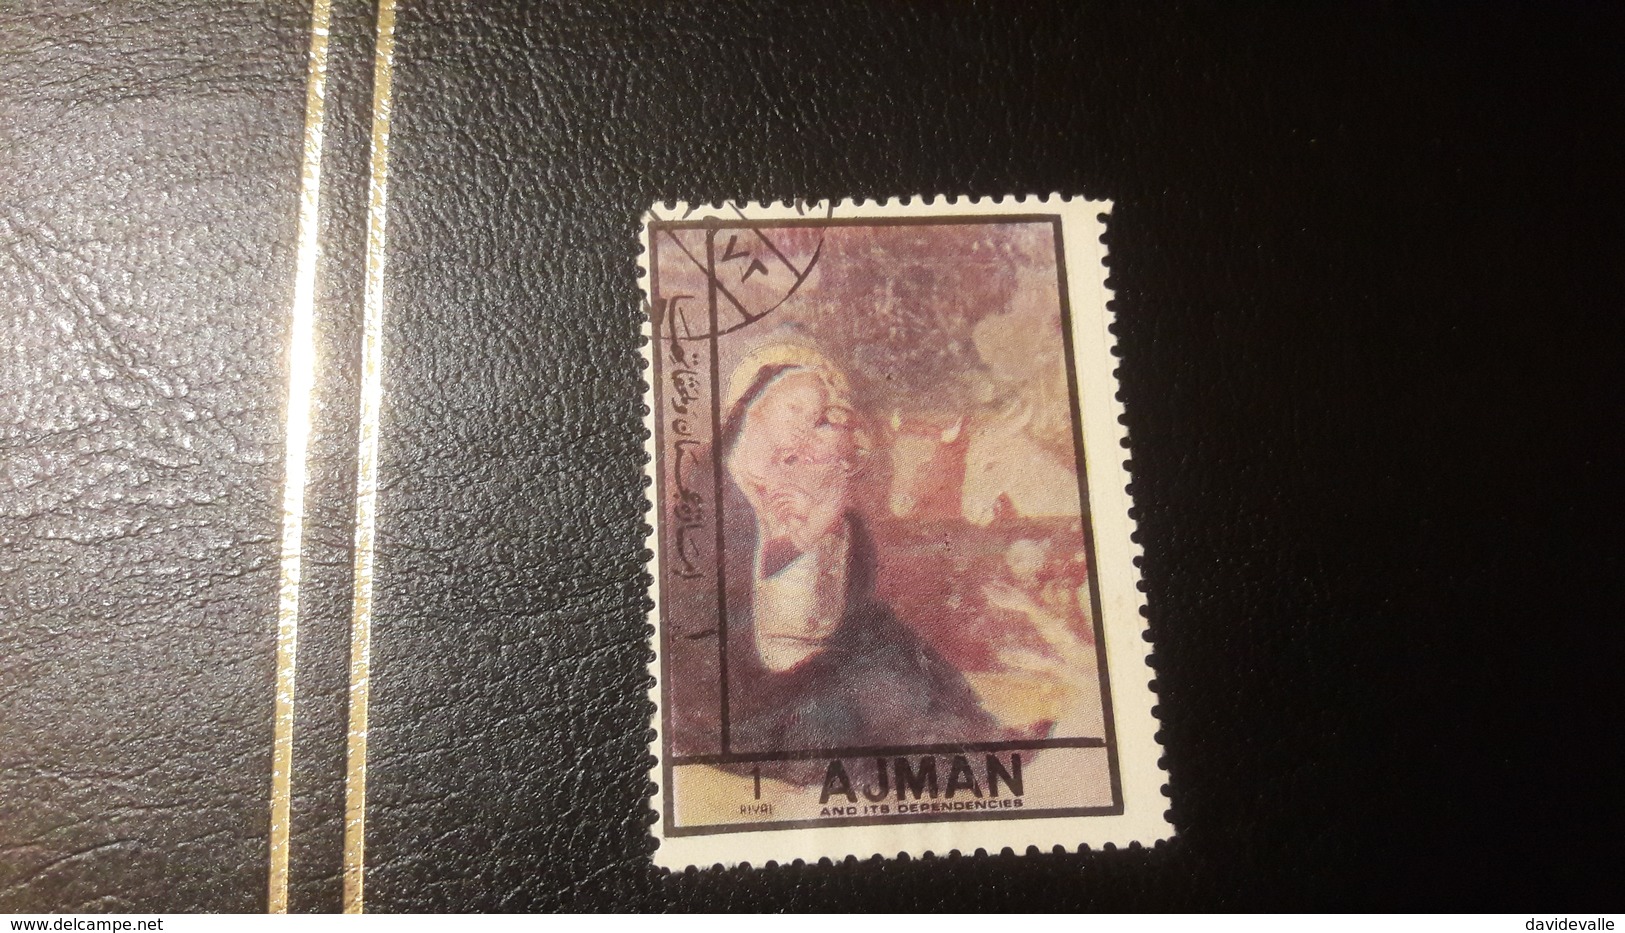 1972 Christmas - Ajman